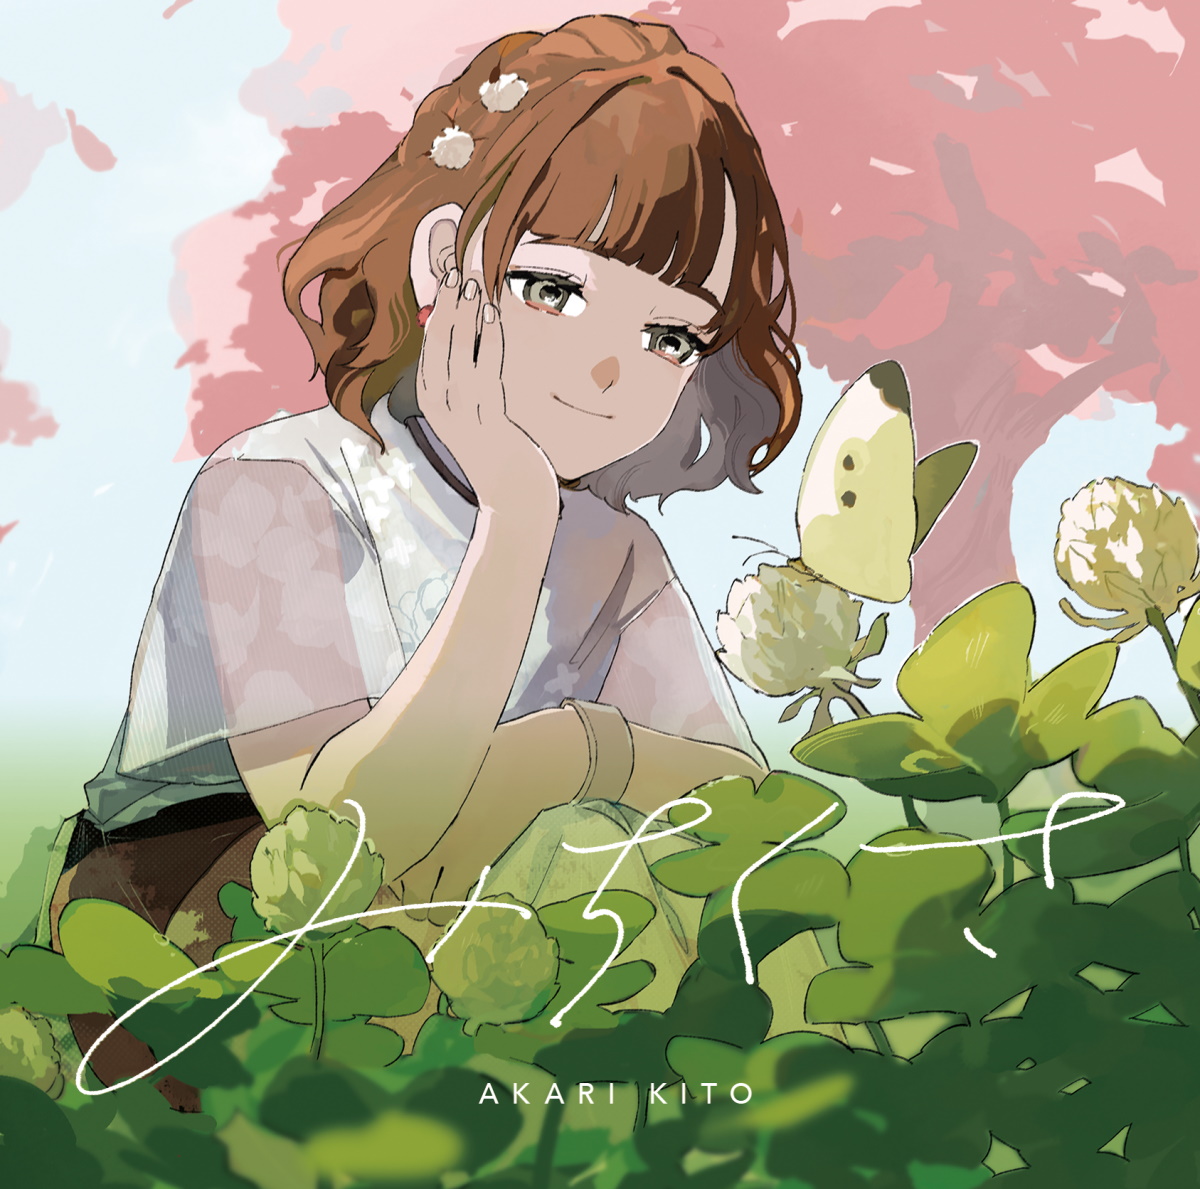 Cover art for『Akari Kito - Michikusa』from the release『Michikusa』